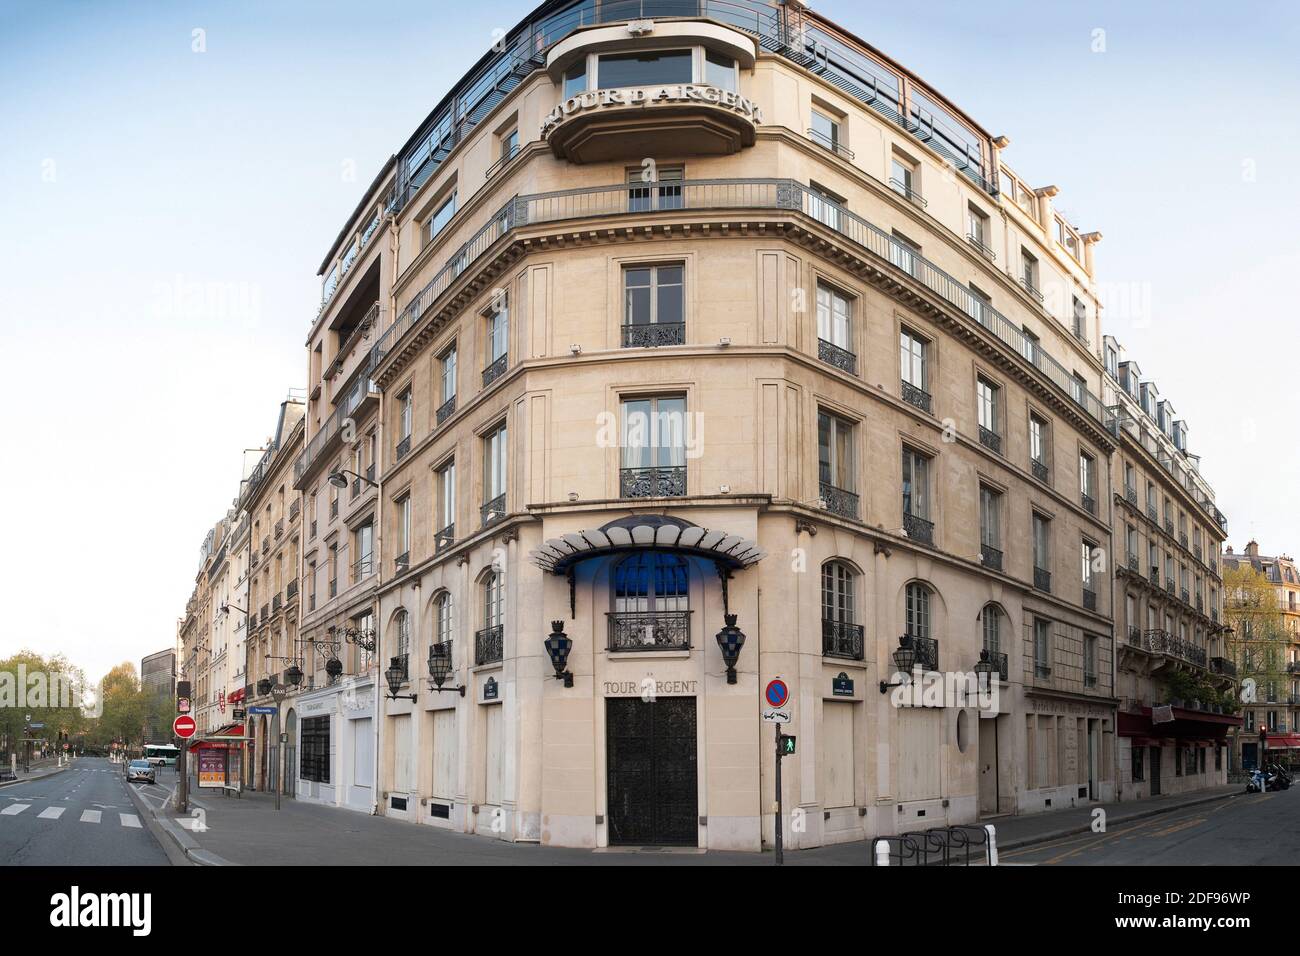 View of a famous Tour d'Argent restaurant closed on Quai de la Tournelle after gourvernement measure due to the coronavirus (Covid-19) pandemic in Paris, on April 12, 2020 in Paris, France. Photo by David NIVIERE/ABACAPRESS.COM Stock Photo